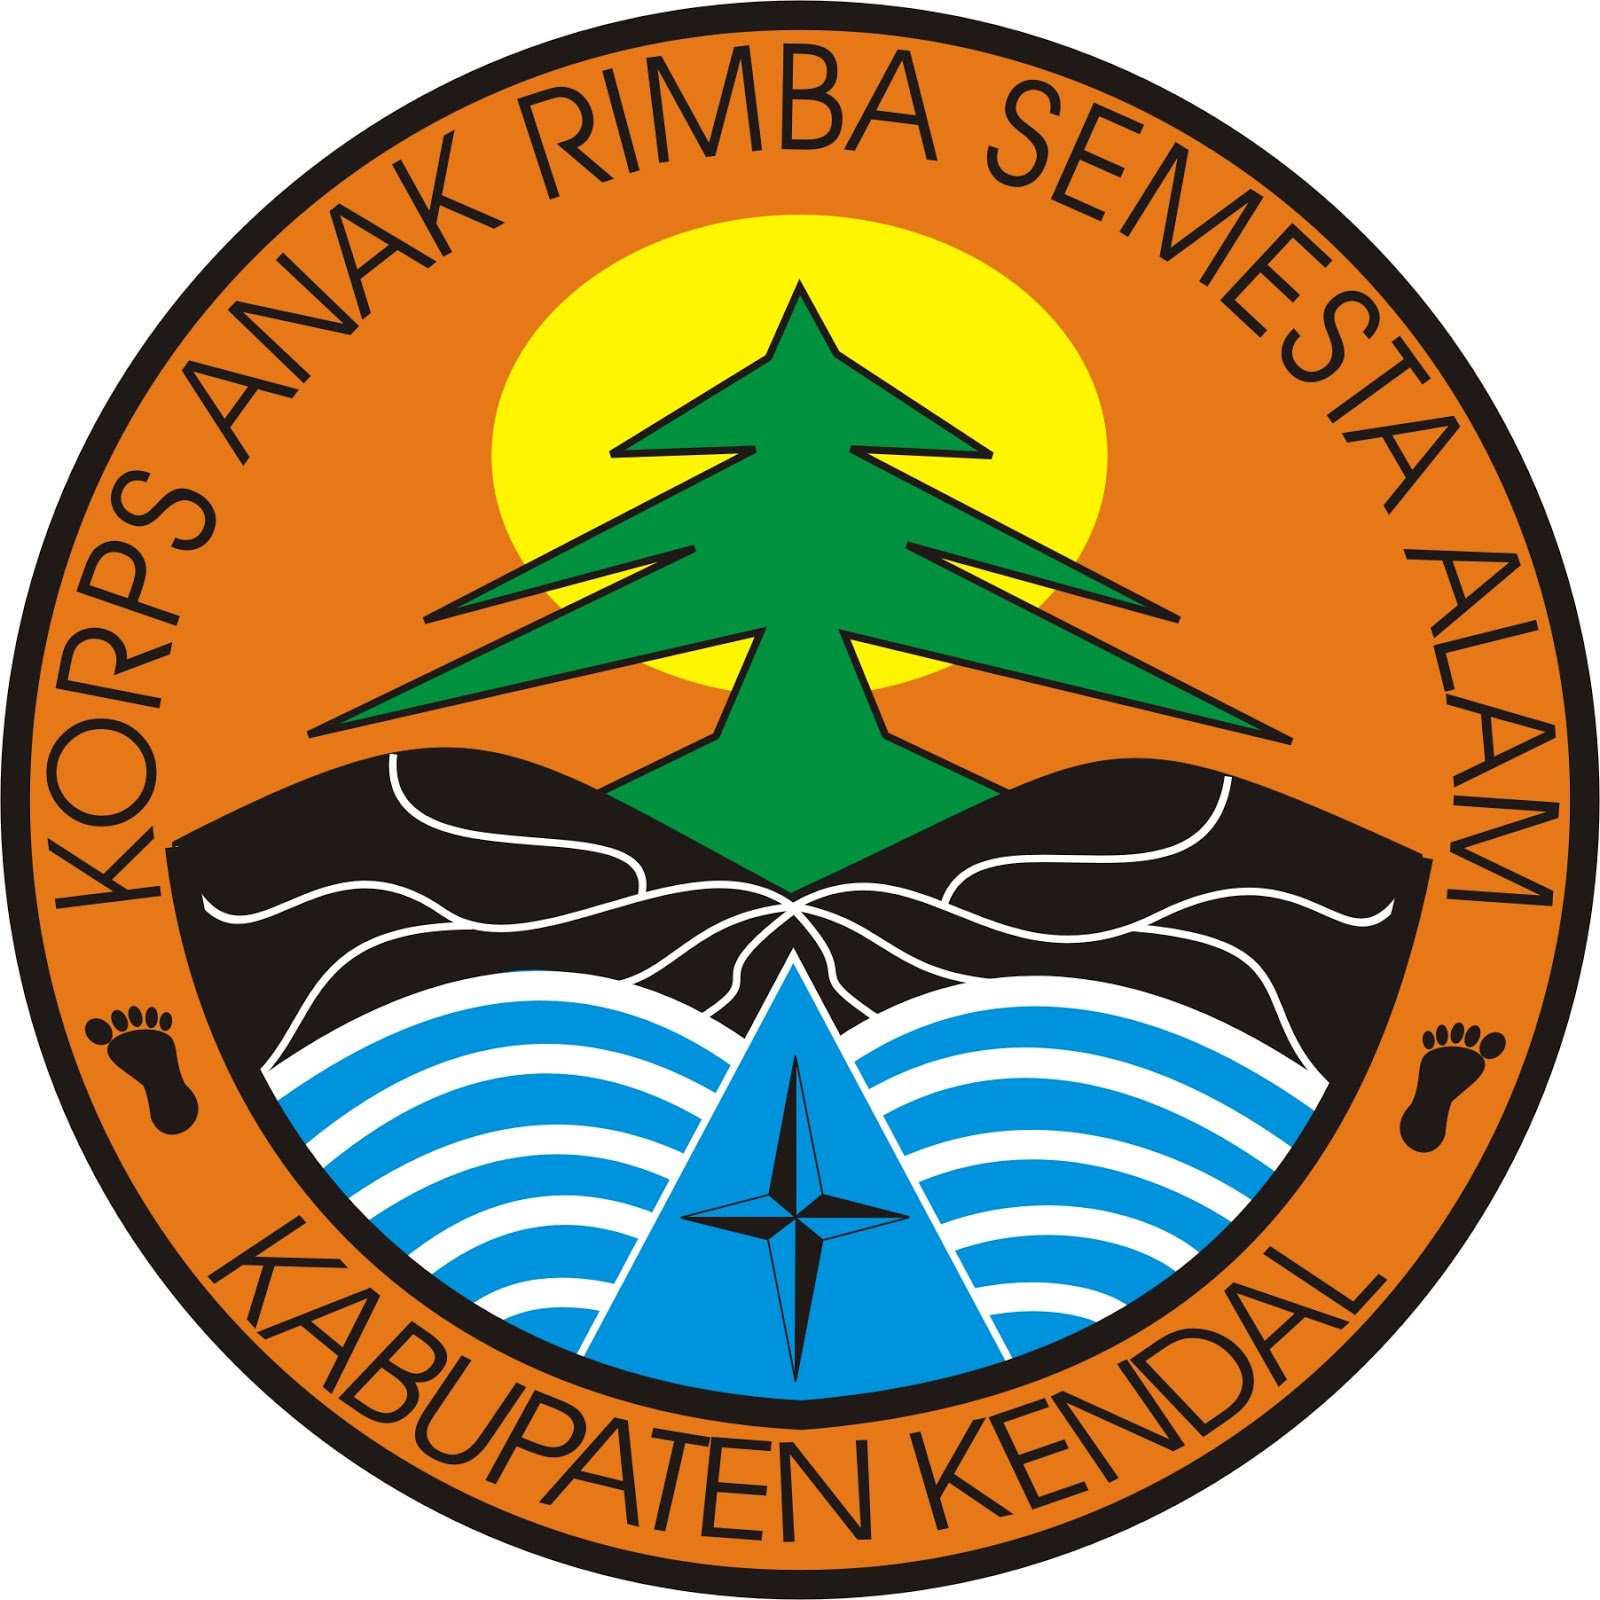 Logo Kabupaten Kendal